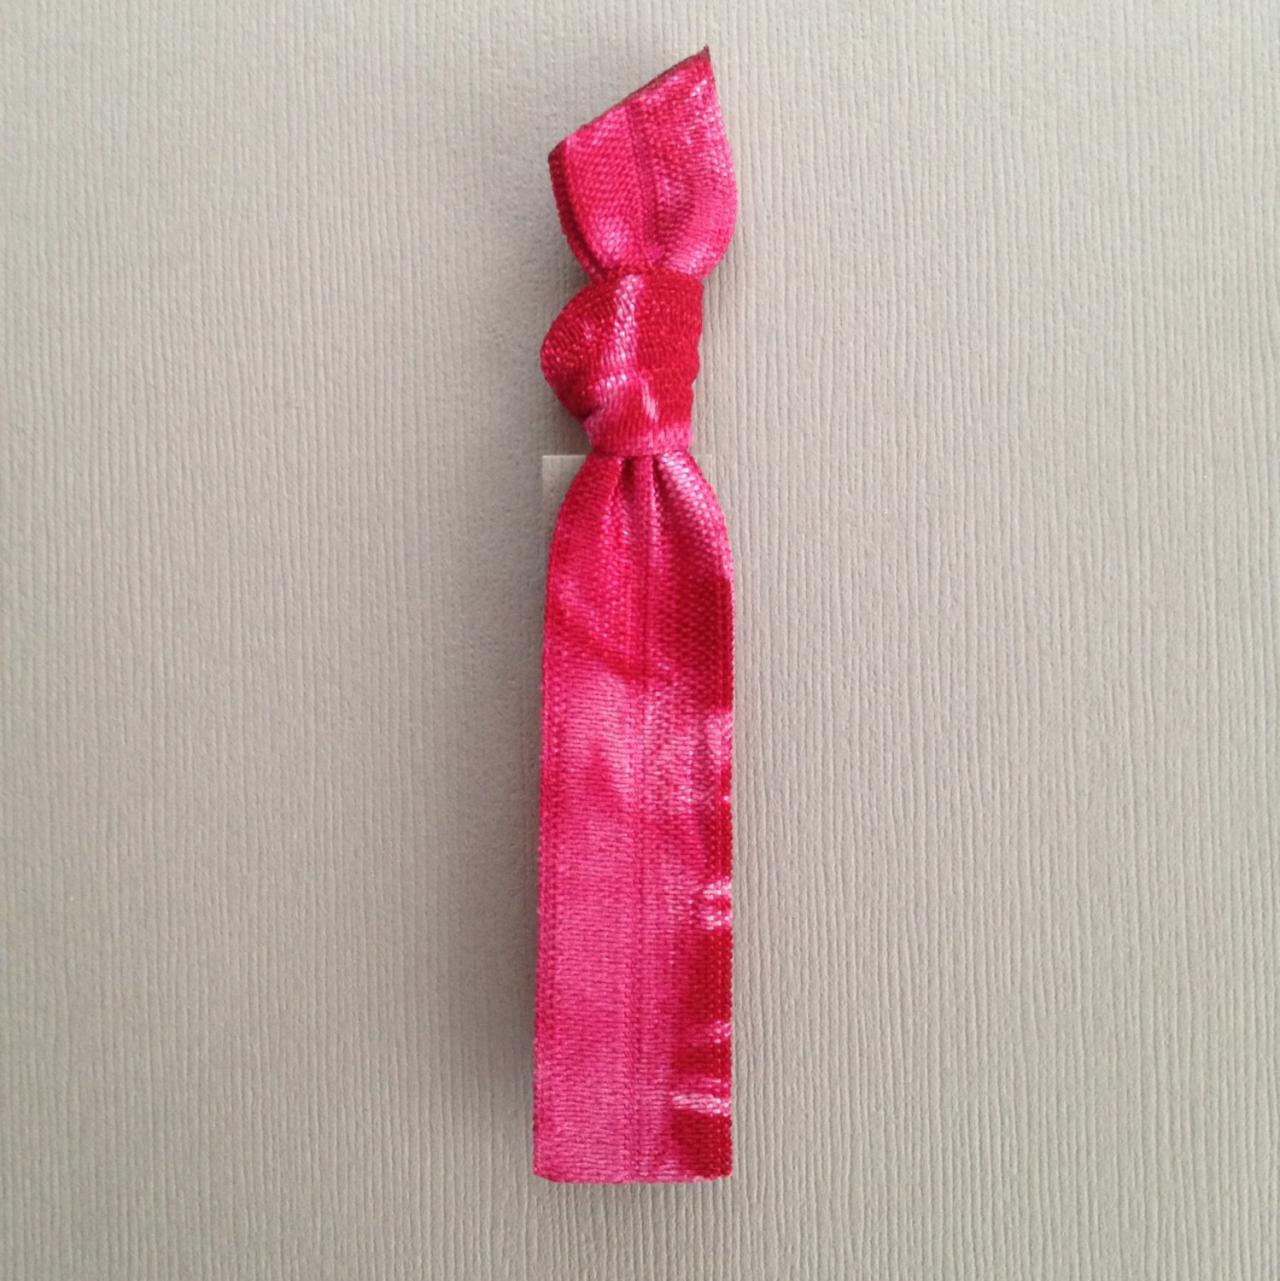 1 Crimson Tie Dye Hair Tie by Elastic Hair Bandz on Etsy